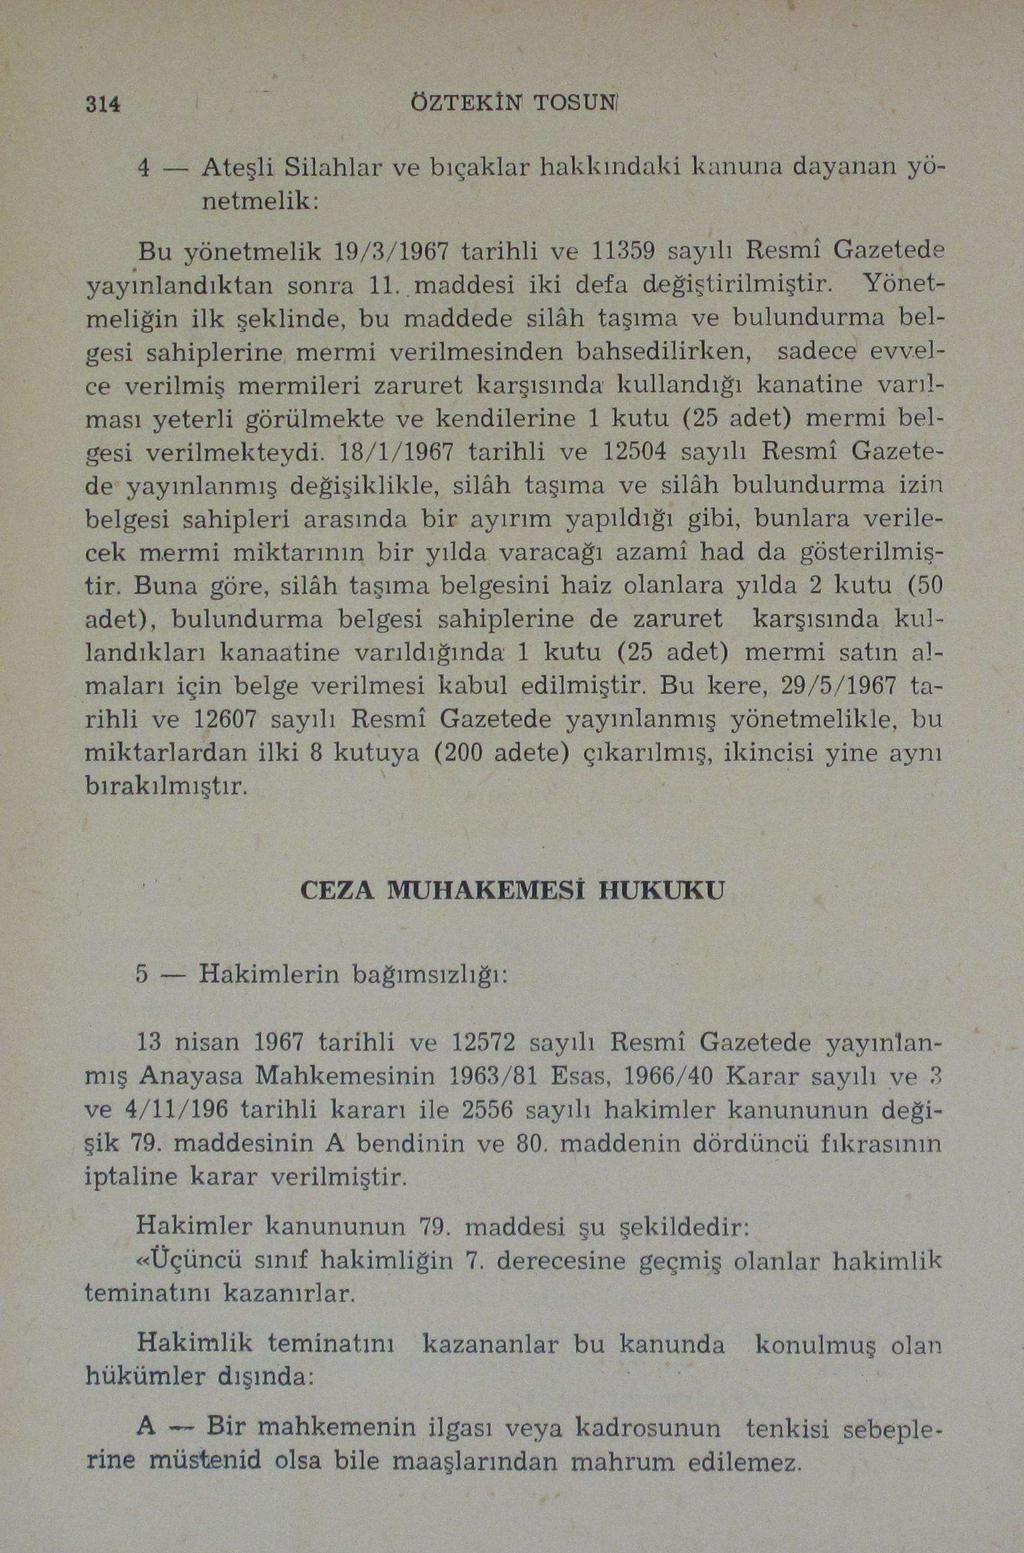 314 ÖZTEKİN TOSUNI Bu yönetmelik 19/3/1967 tarihli ve 11359 sayılı Resmî Gazetede yayınlandıktan sonra 11.. maddesi iki defa değiştirilmiştir.